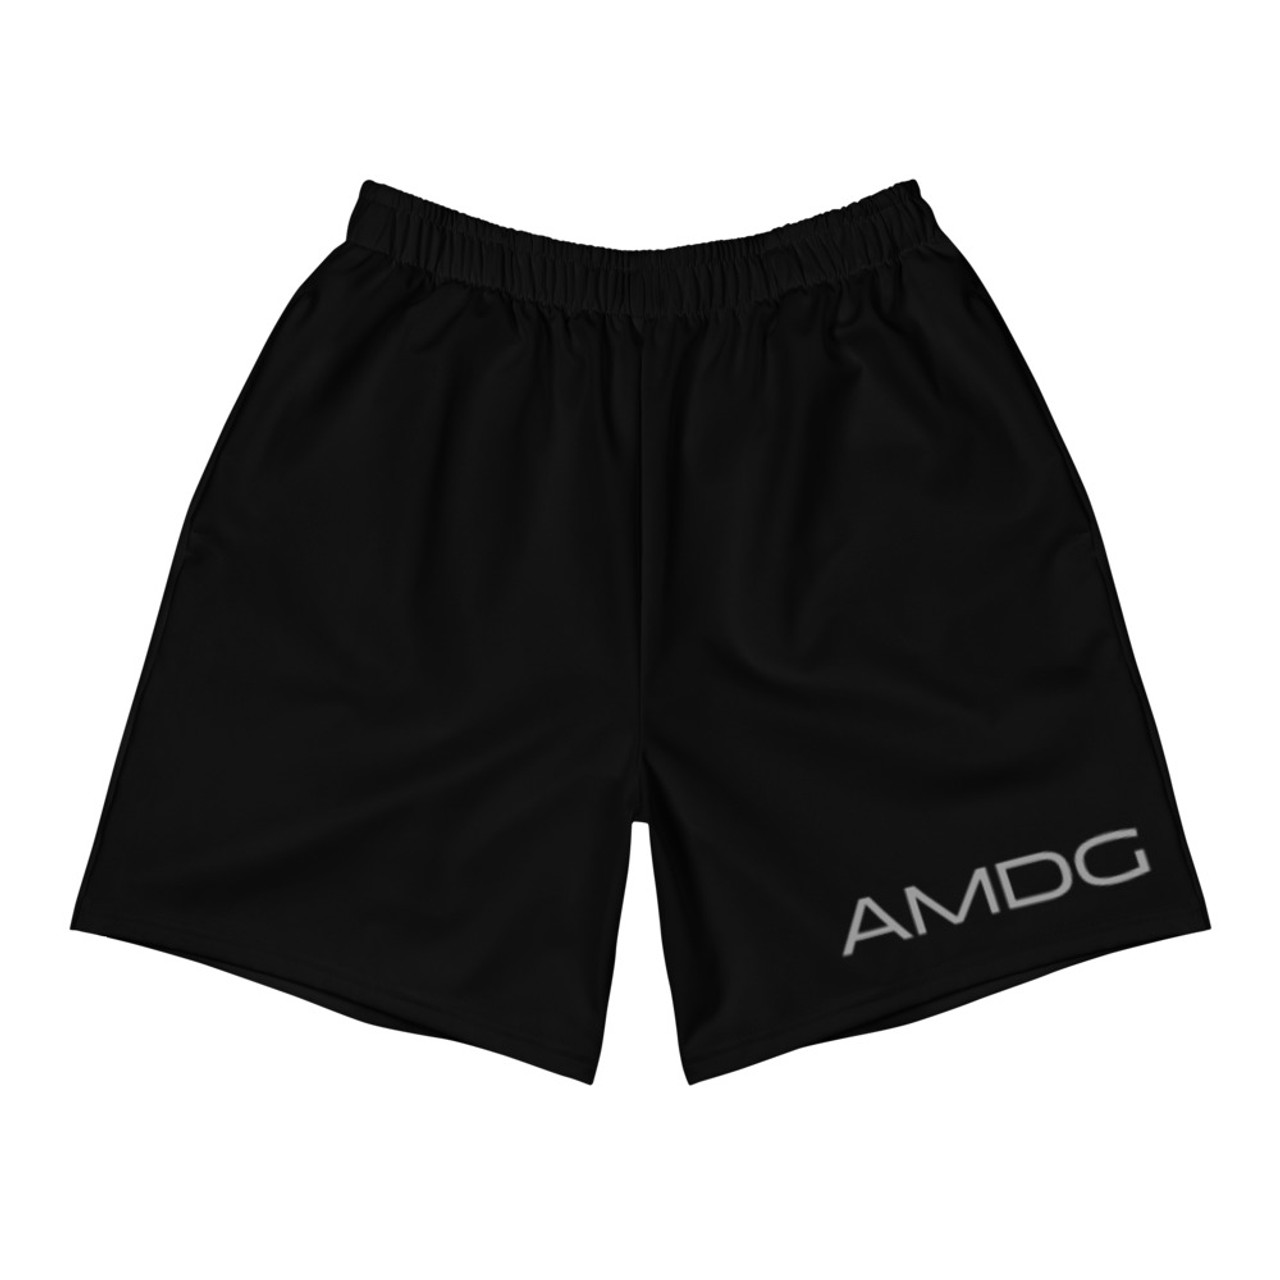 AMDG Athletic Shorts - Just Catholic Stuff